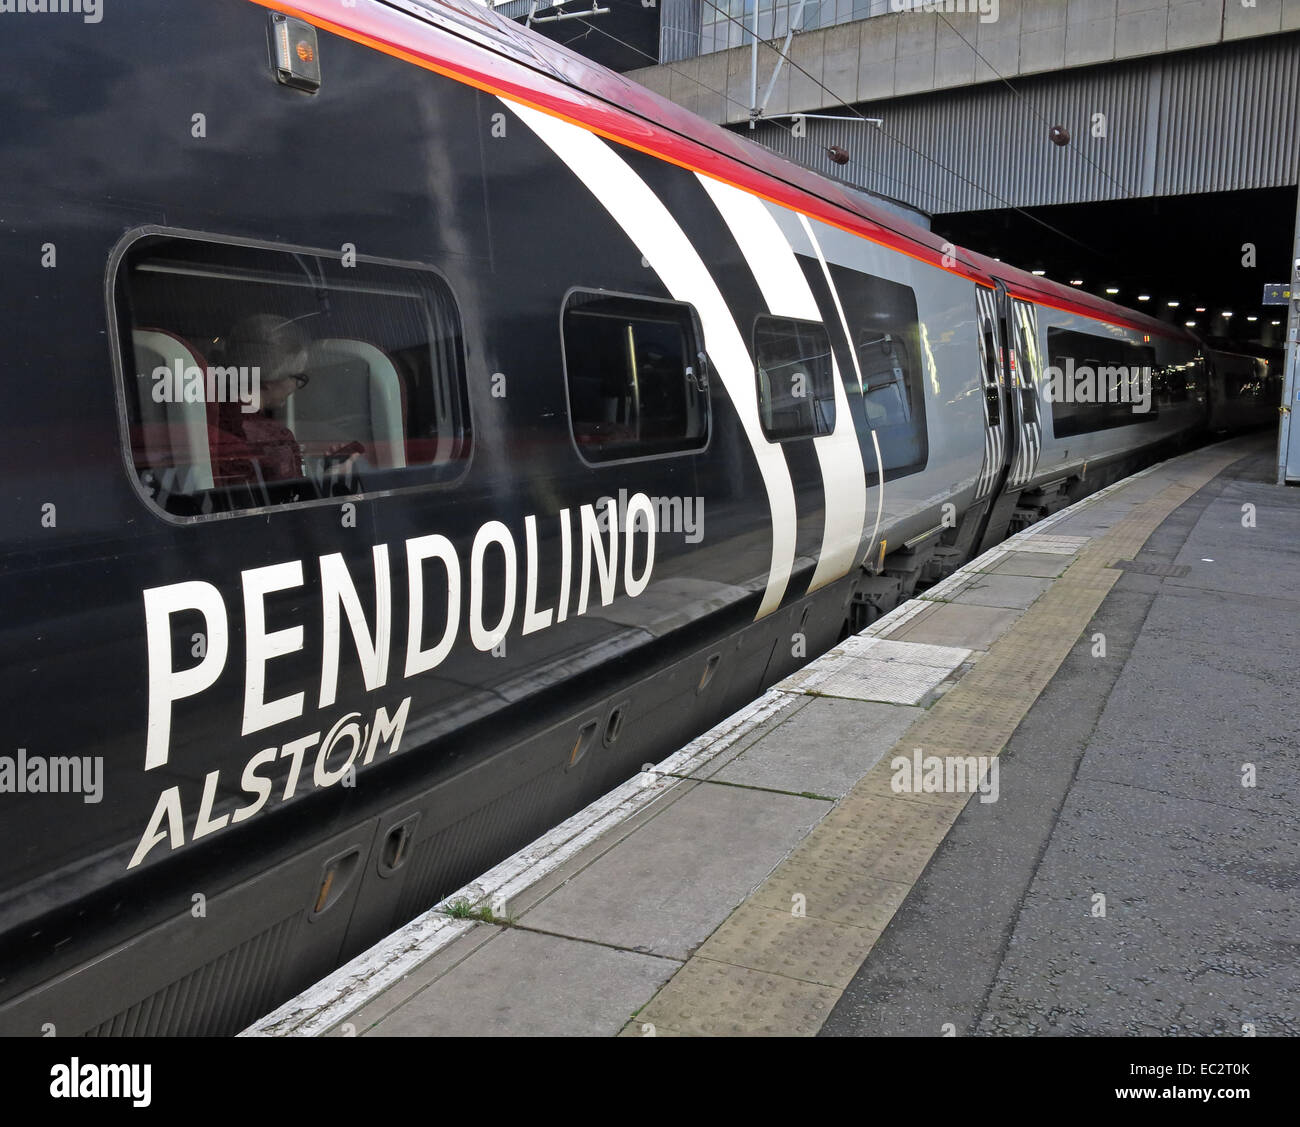 Alstom Pendolino express passenger train at Euston station London, England , UK Stock Photo